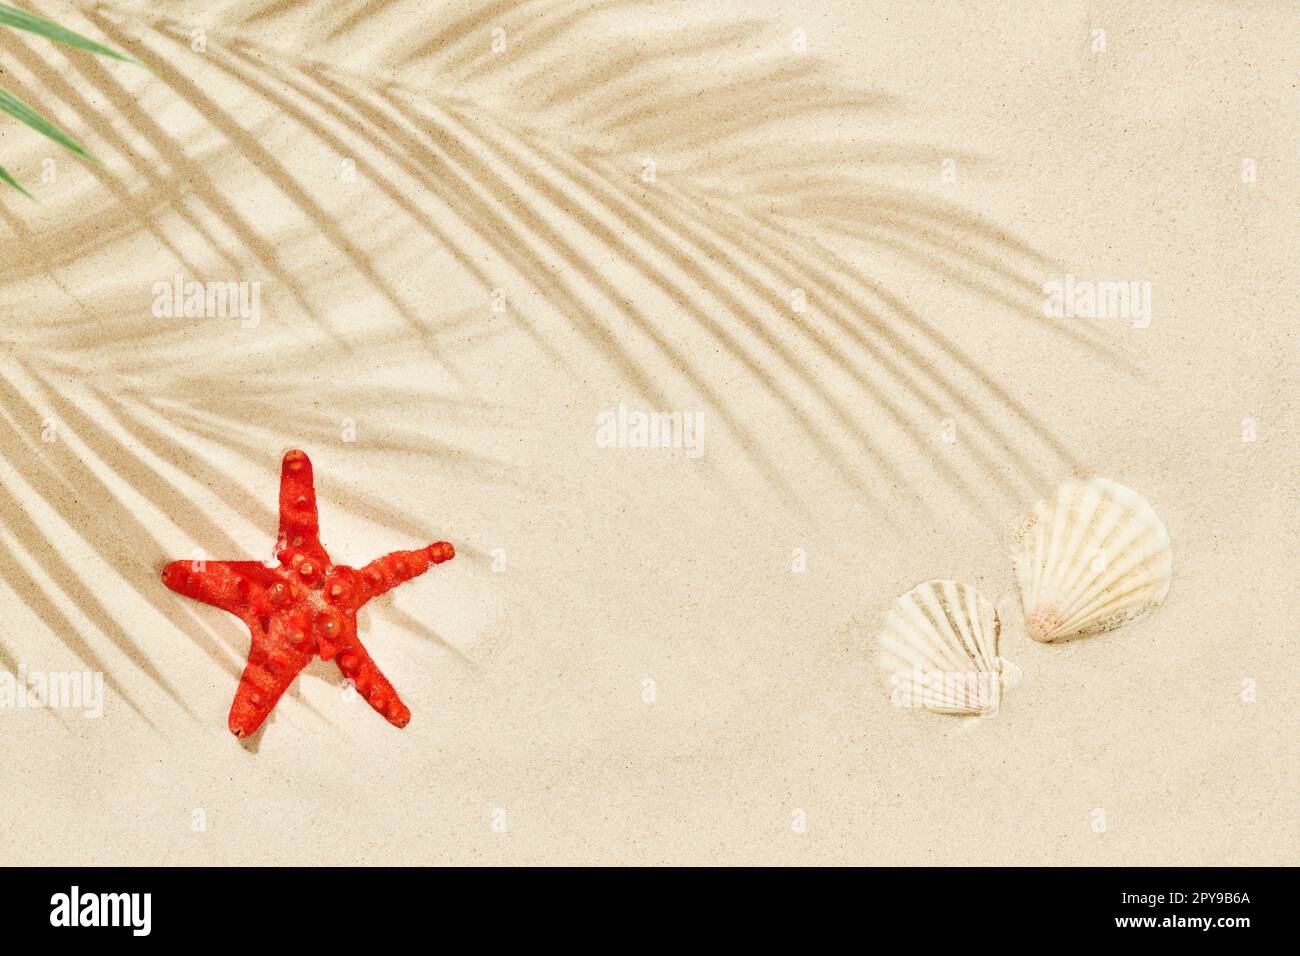 Weißer Sandstrand mit Palmenblattschatten, roten Seesternen und Muscheln. Reise- und Urlaubskonzepthintergrund. Draufsicht, flach liegend Stockfoto